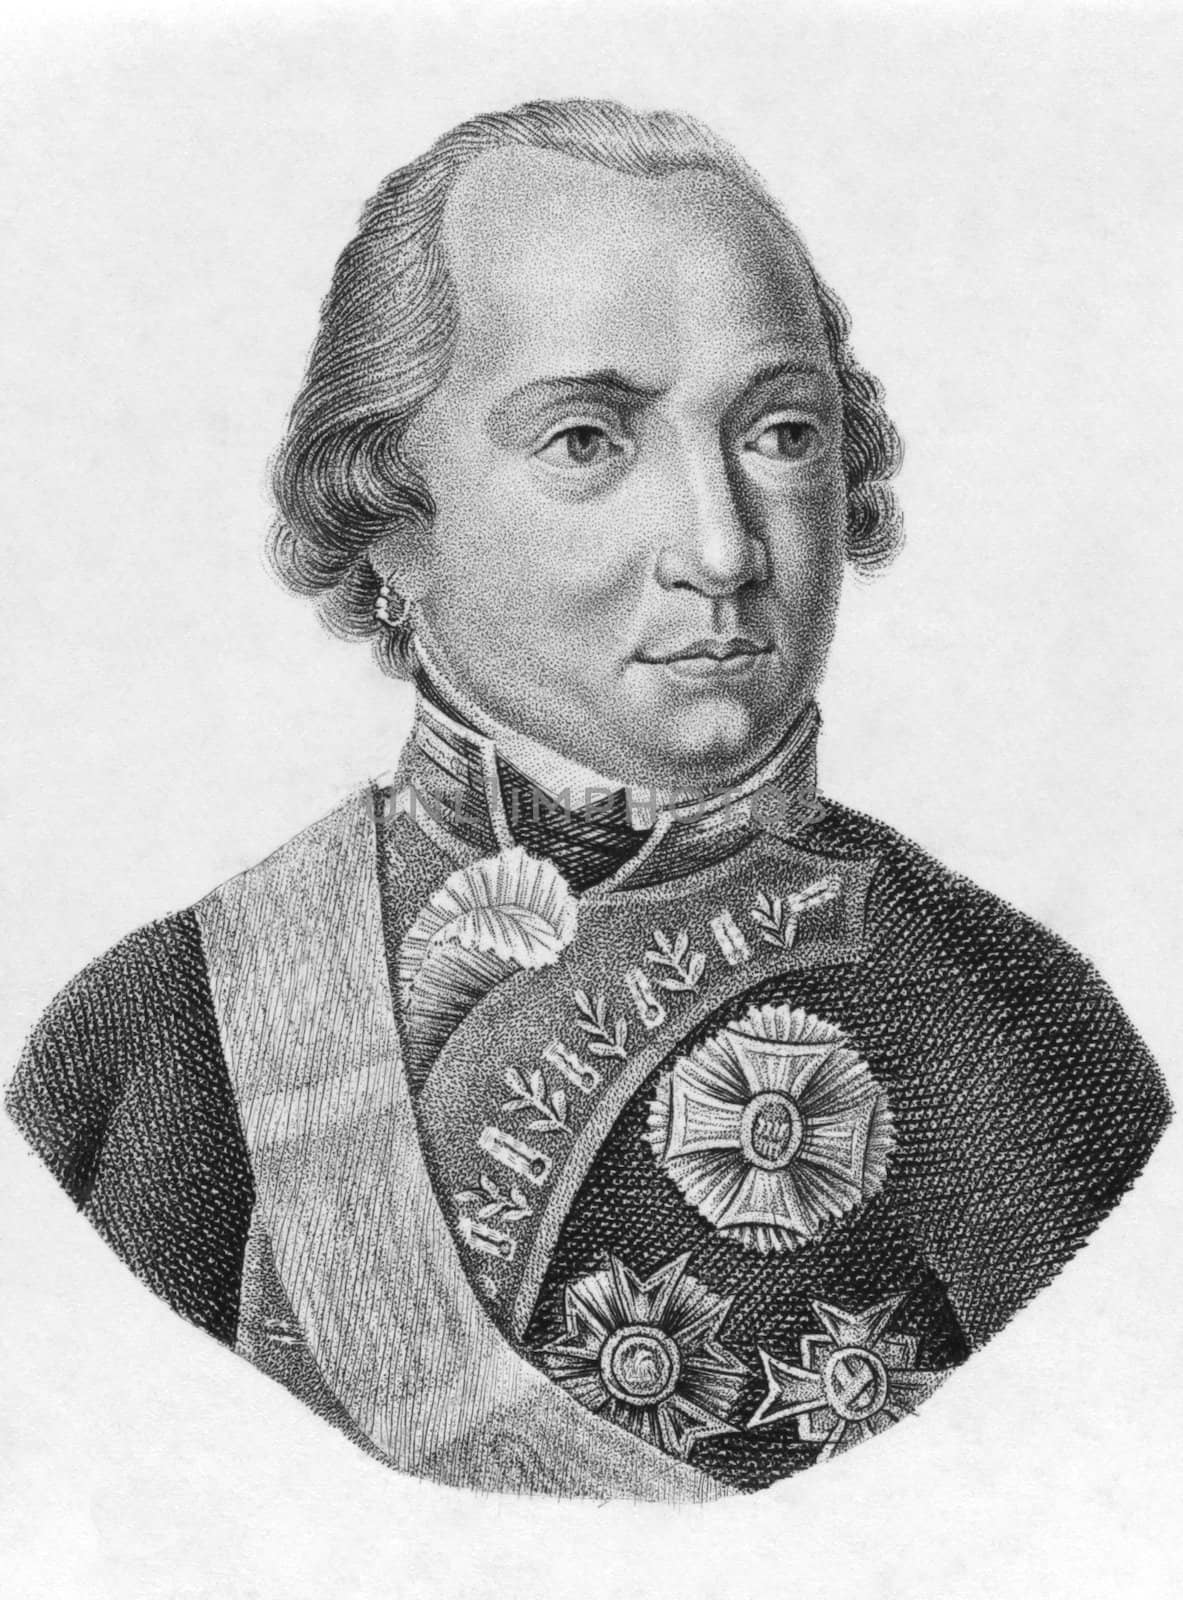 Maximilian I Joseph of Bavaria by Georgios